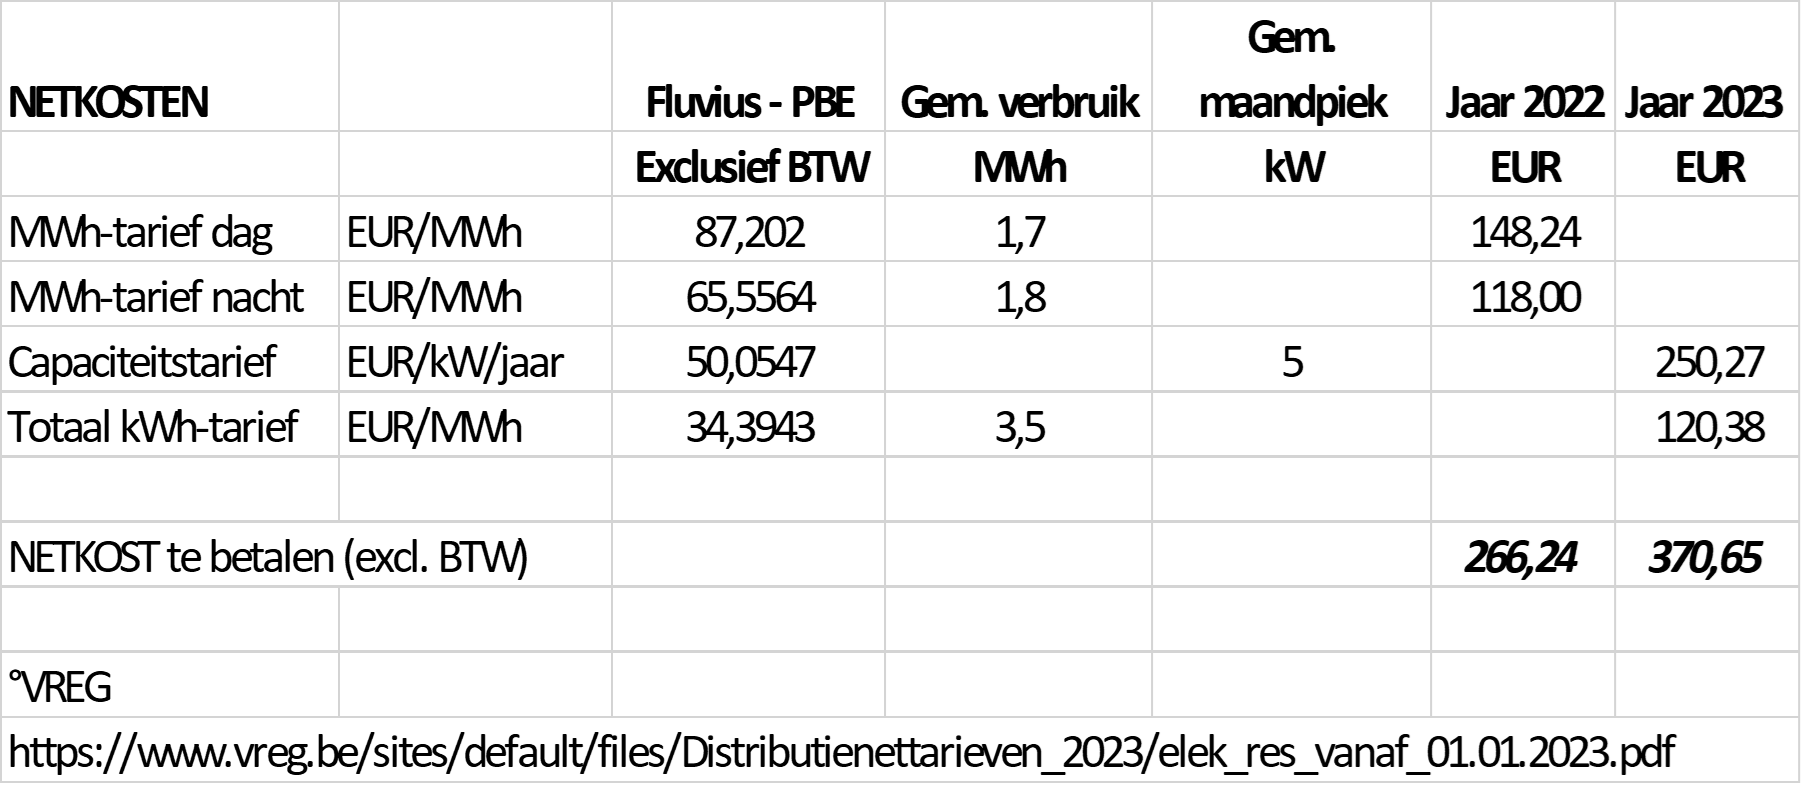 Berekeningsvoorbeeld capaciteitstarief in tabel